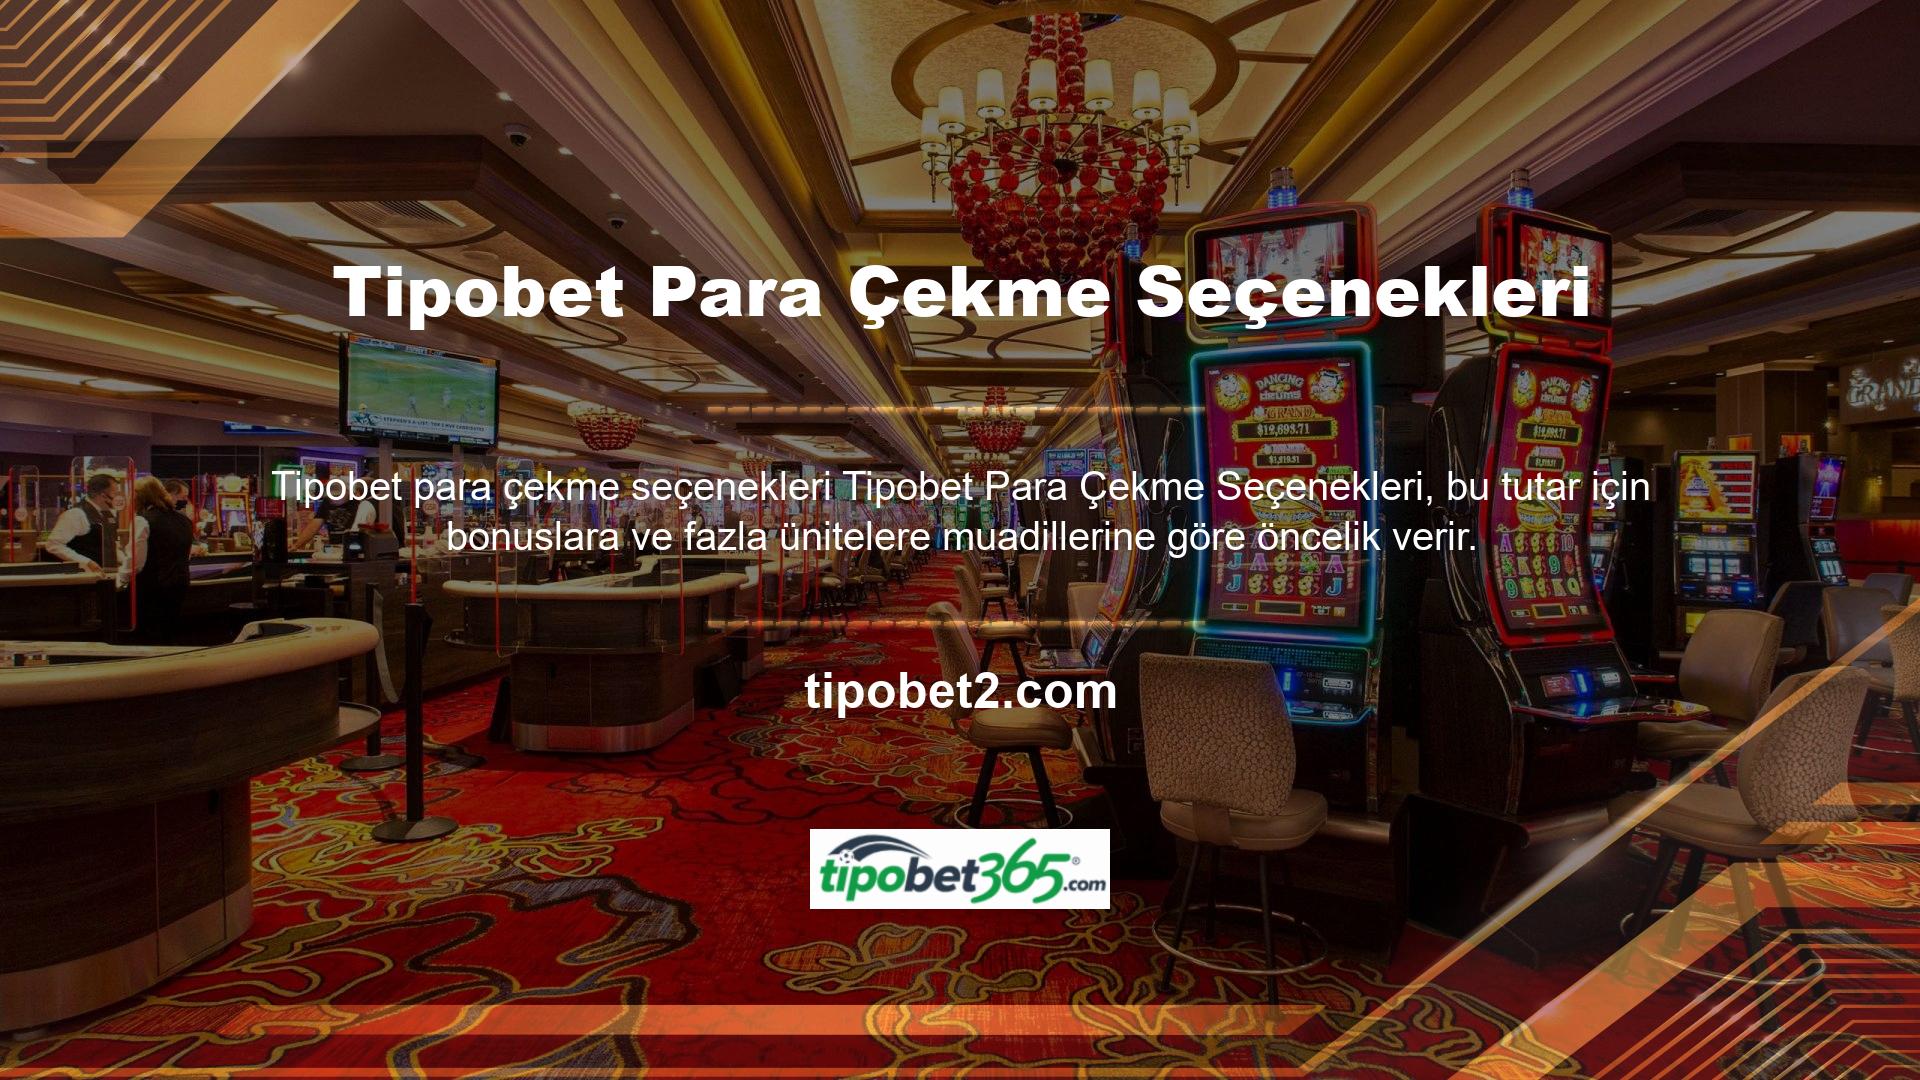 Lisanslı casino siteleri müşterilerin seçim yapabileceği en iyi adreslerden biri olarak kabul edilmektedir